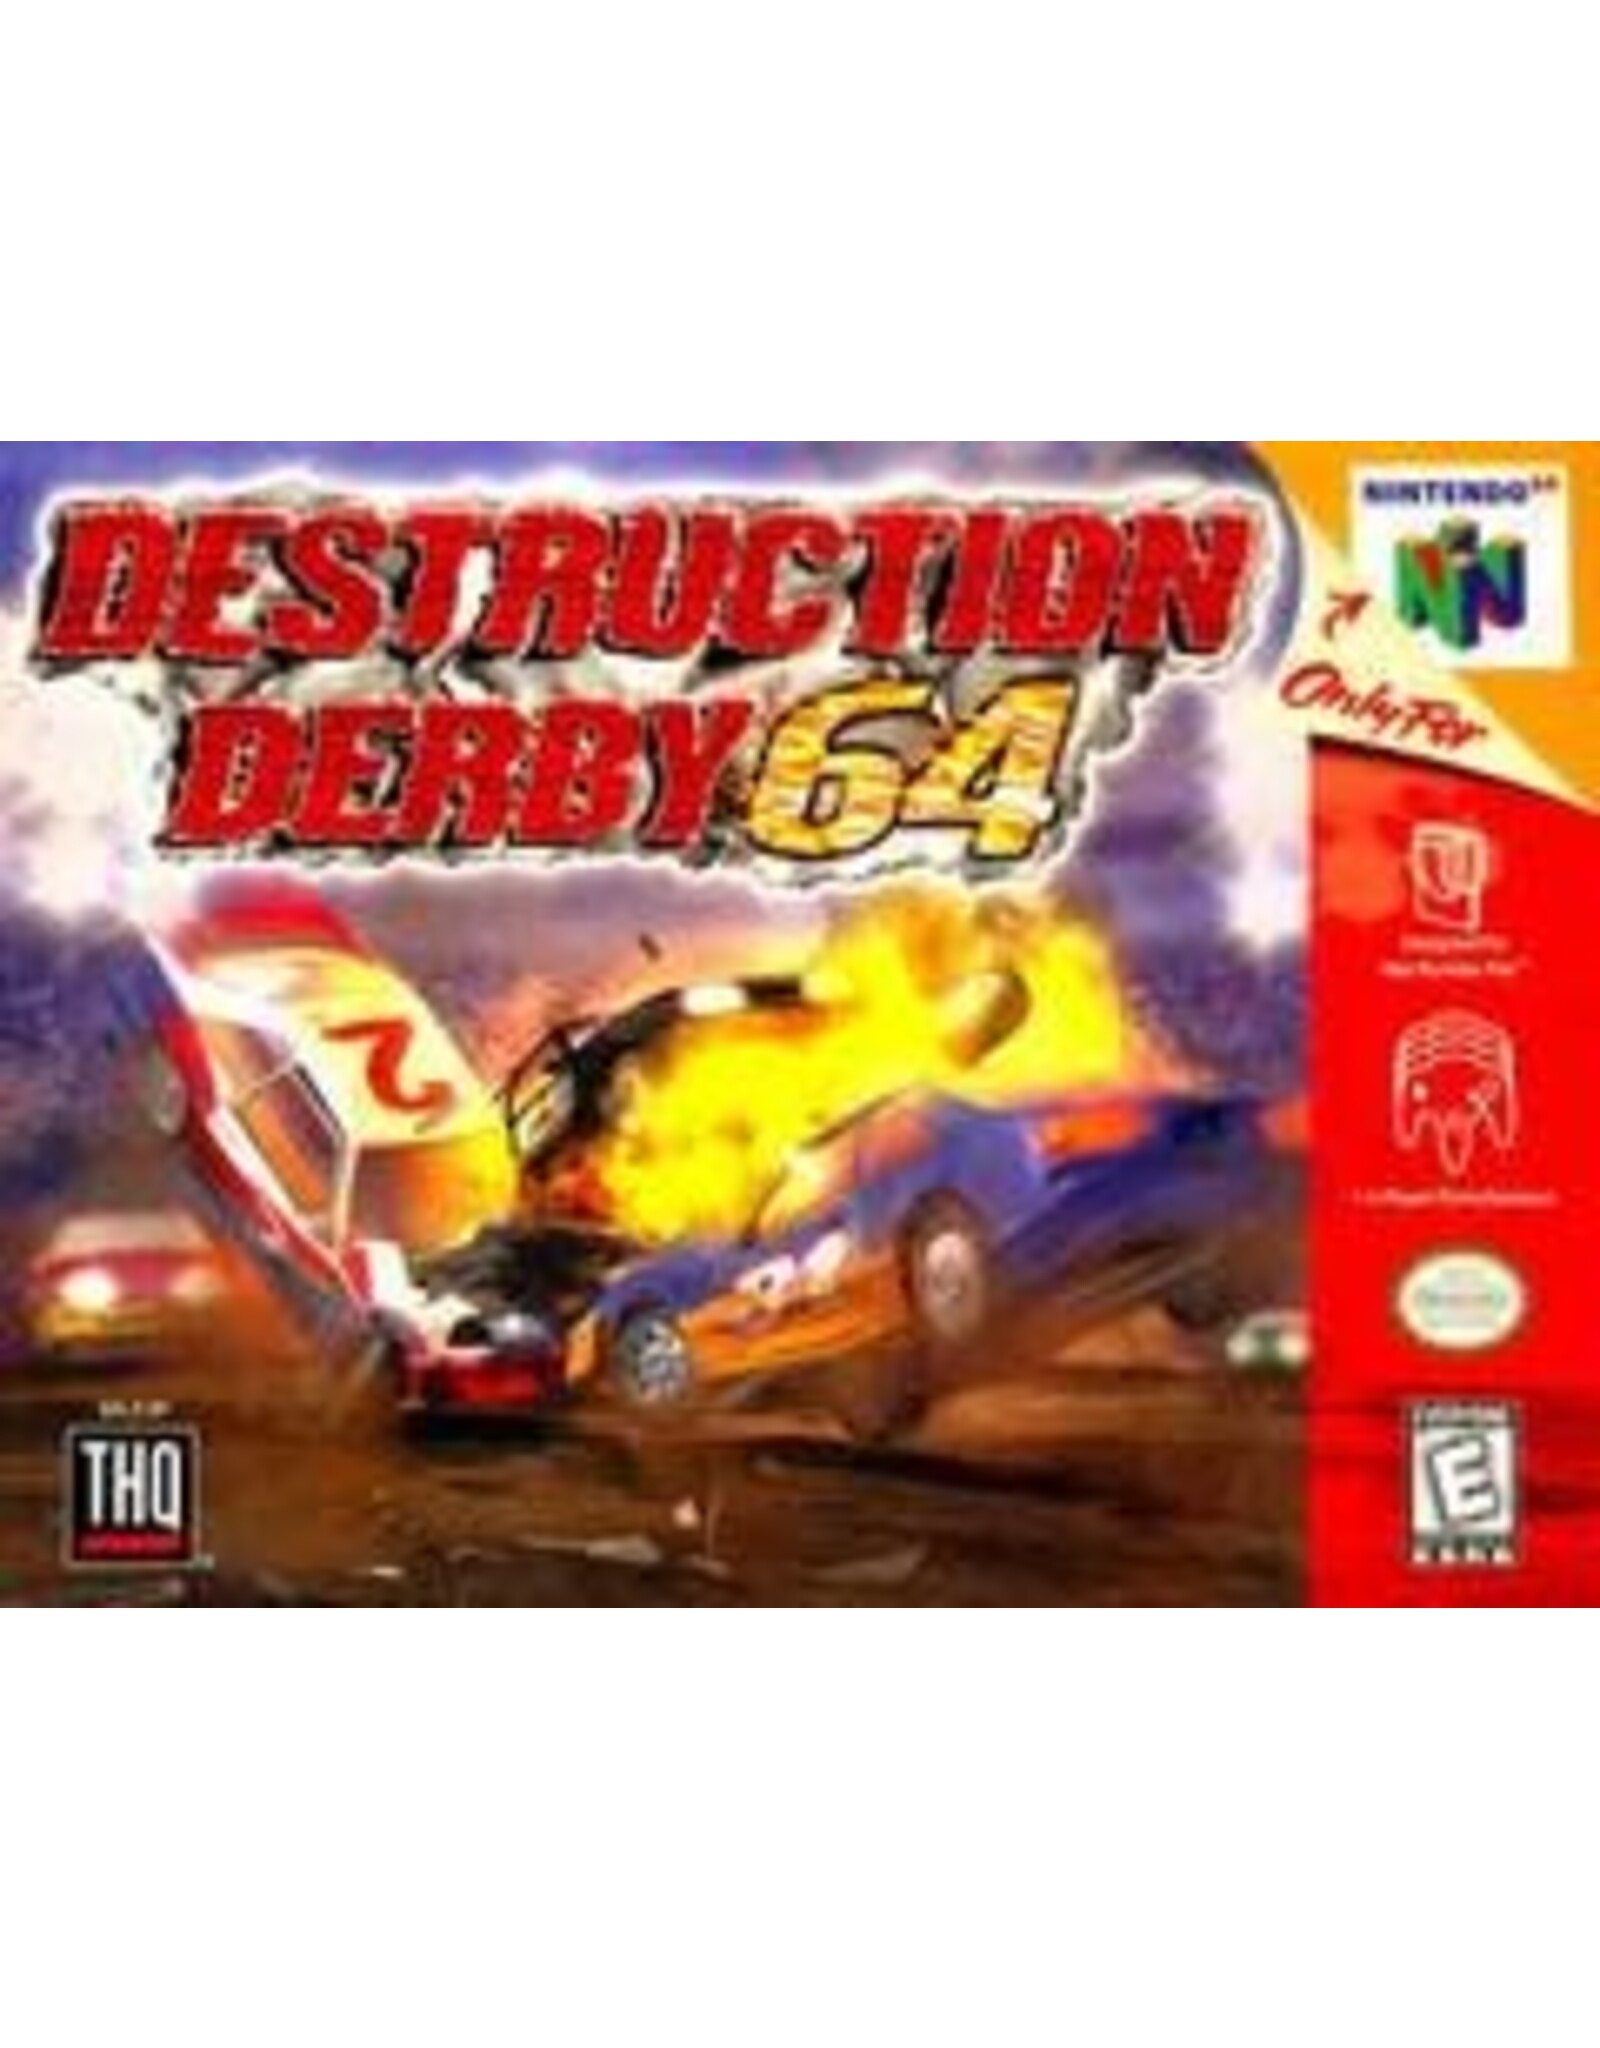 Nintendo 64 Destruction Derby 64 (Cart Only, Damaged Label)